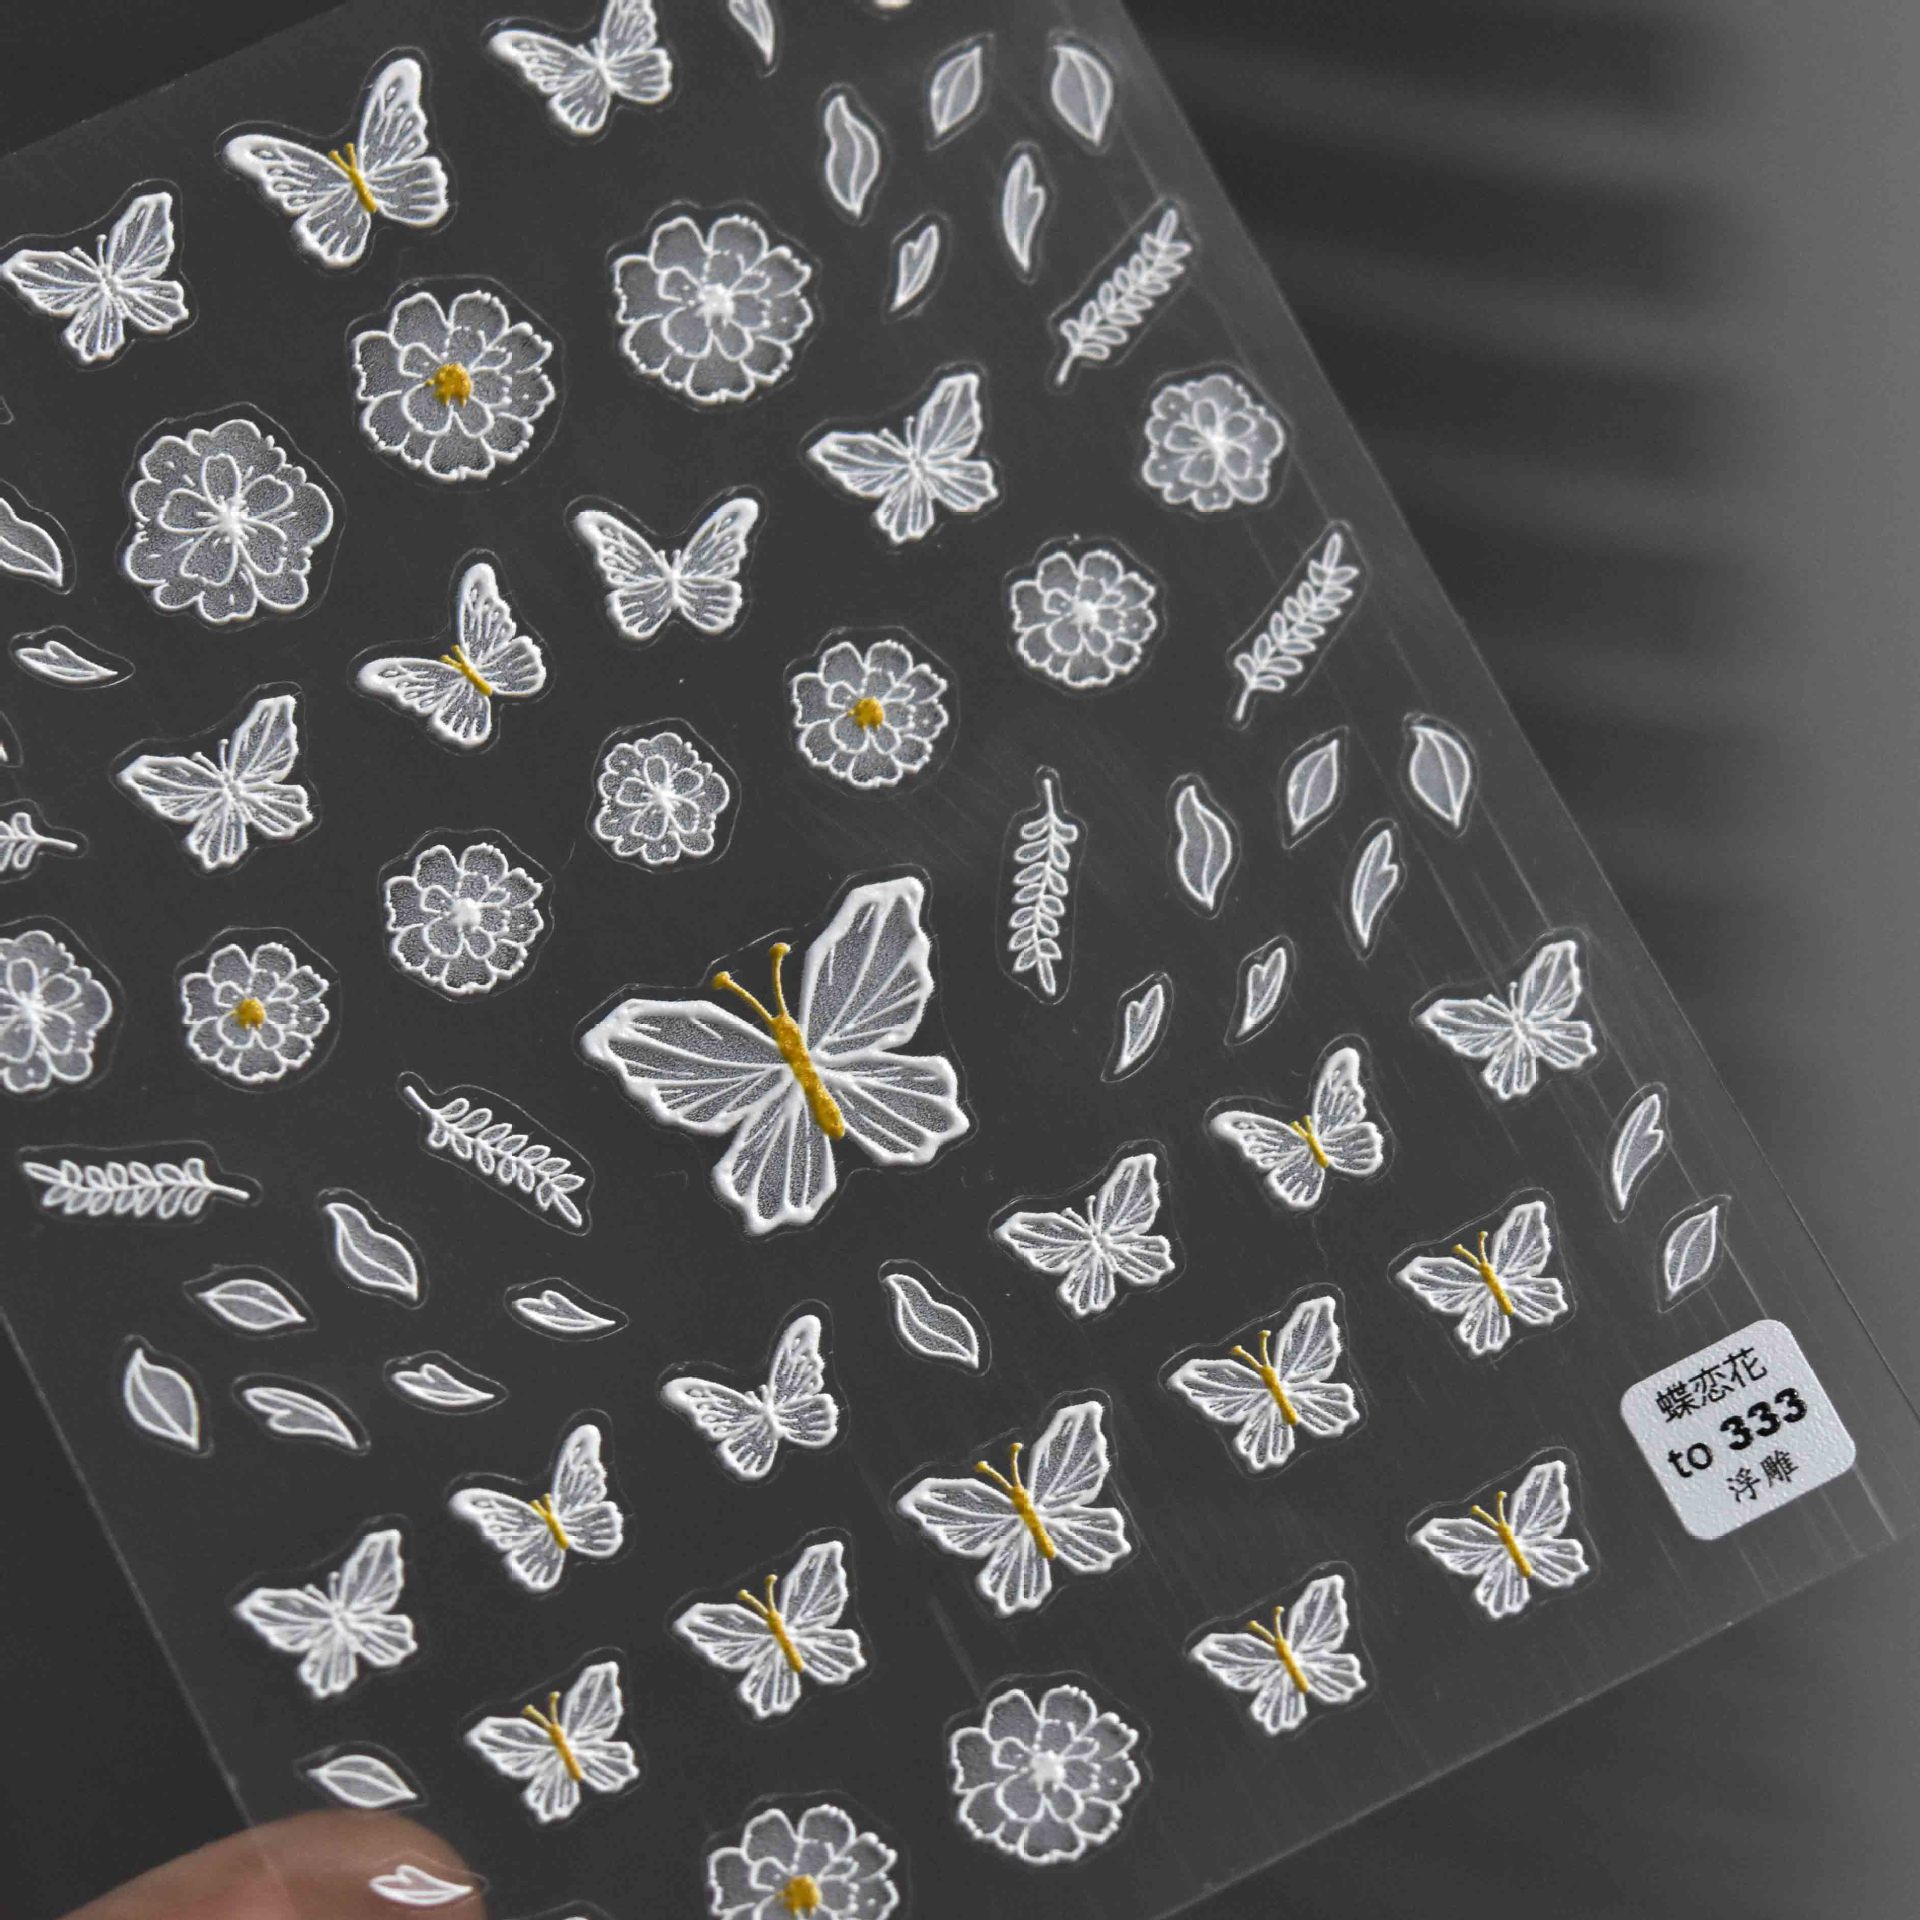 1Pc 3D Vlinder Daisy Nail Sticker Decals Voor Manicure Terug Lijm Carving Bloem Sticker Voor Diy Nail Art decoratie